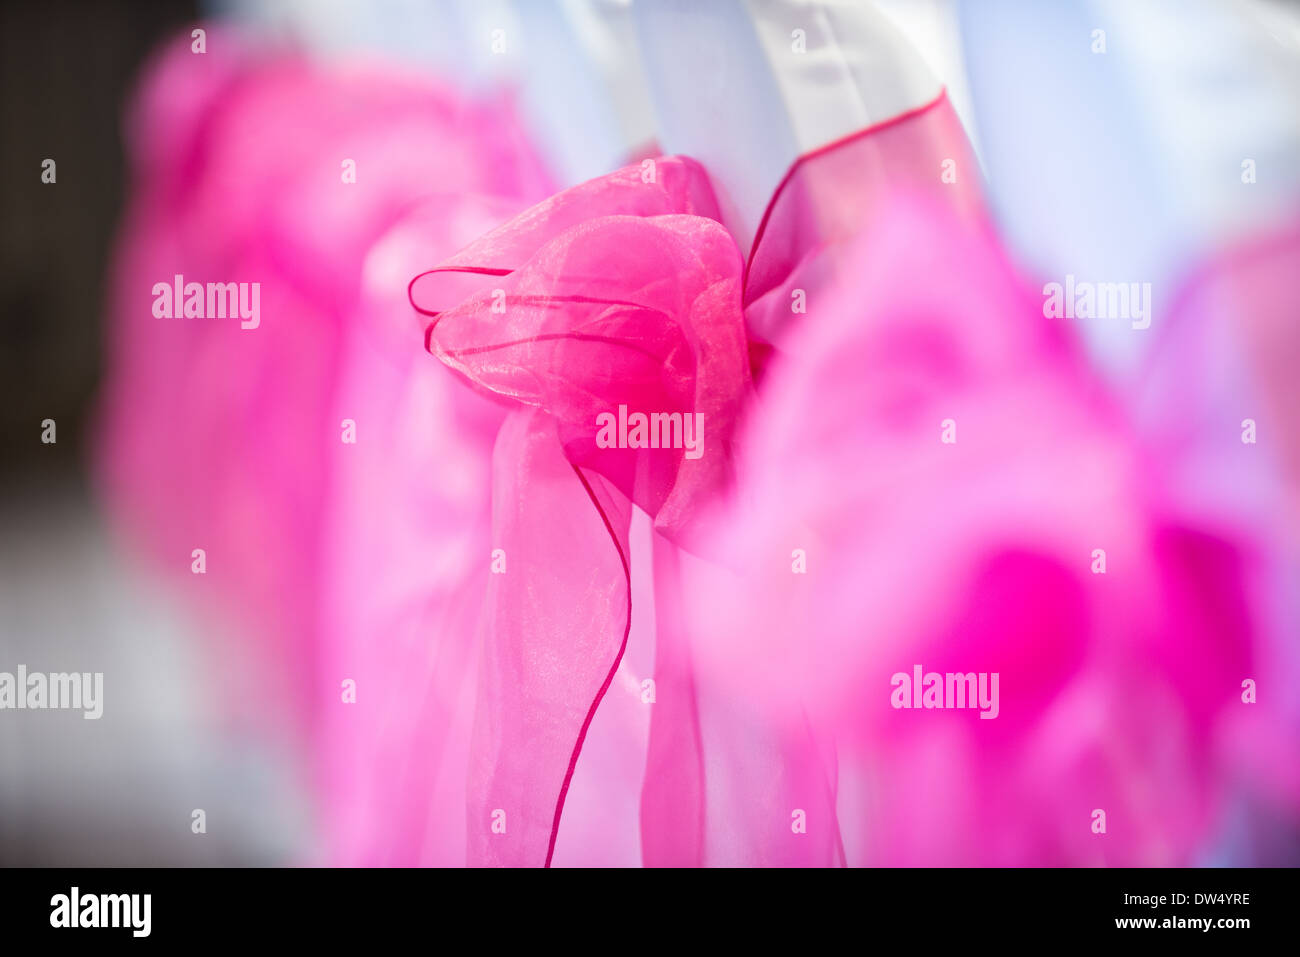 Una messa a fuoco poco profonda immagine di archetti rosa legato alla sedia bianca spalle Foto Stock